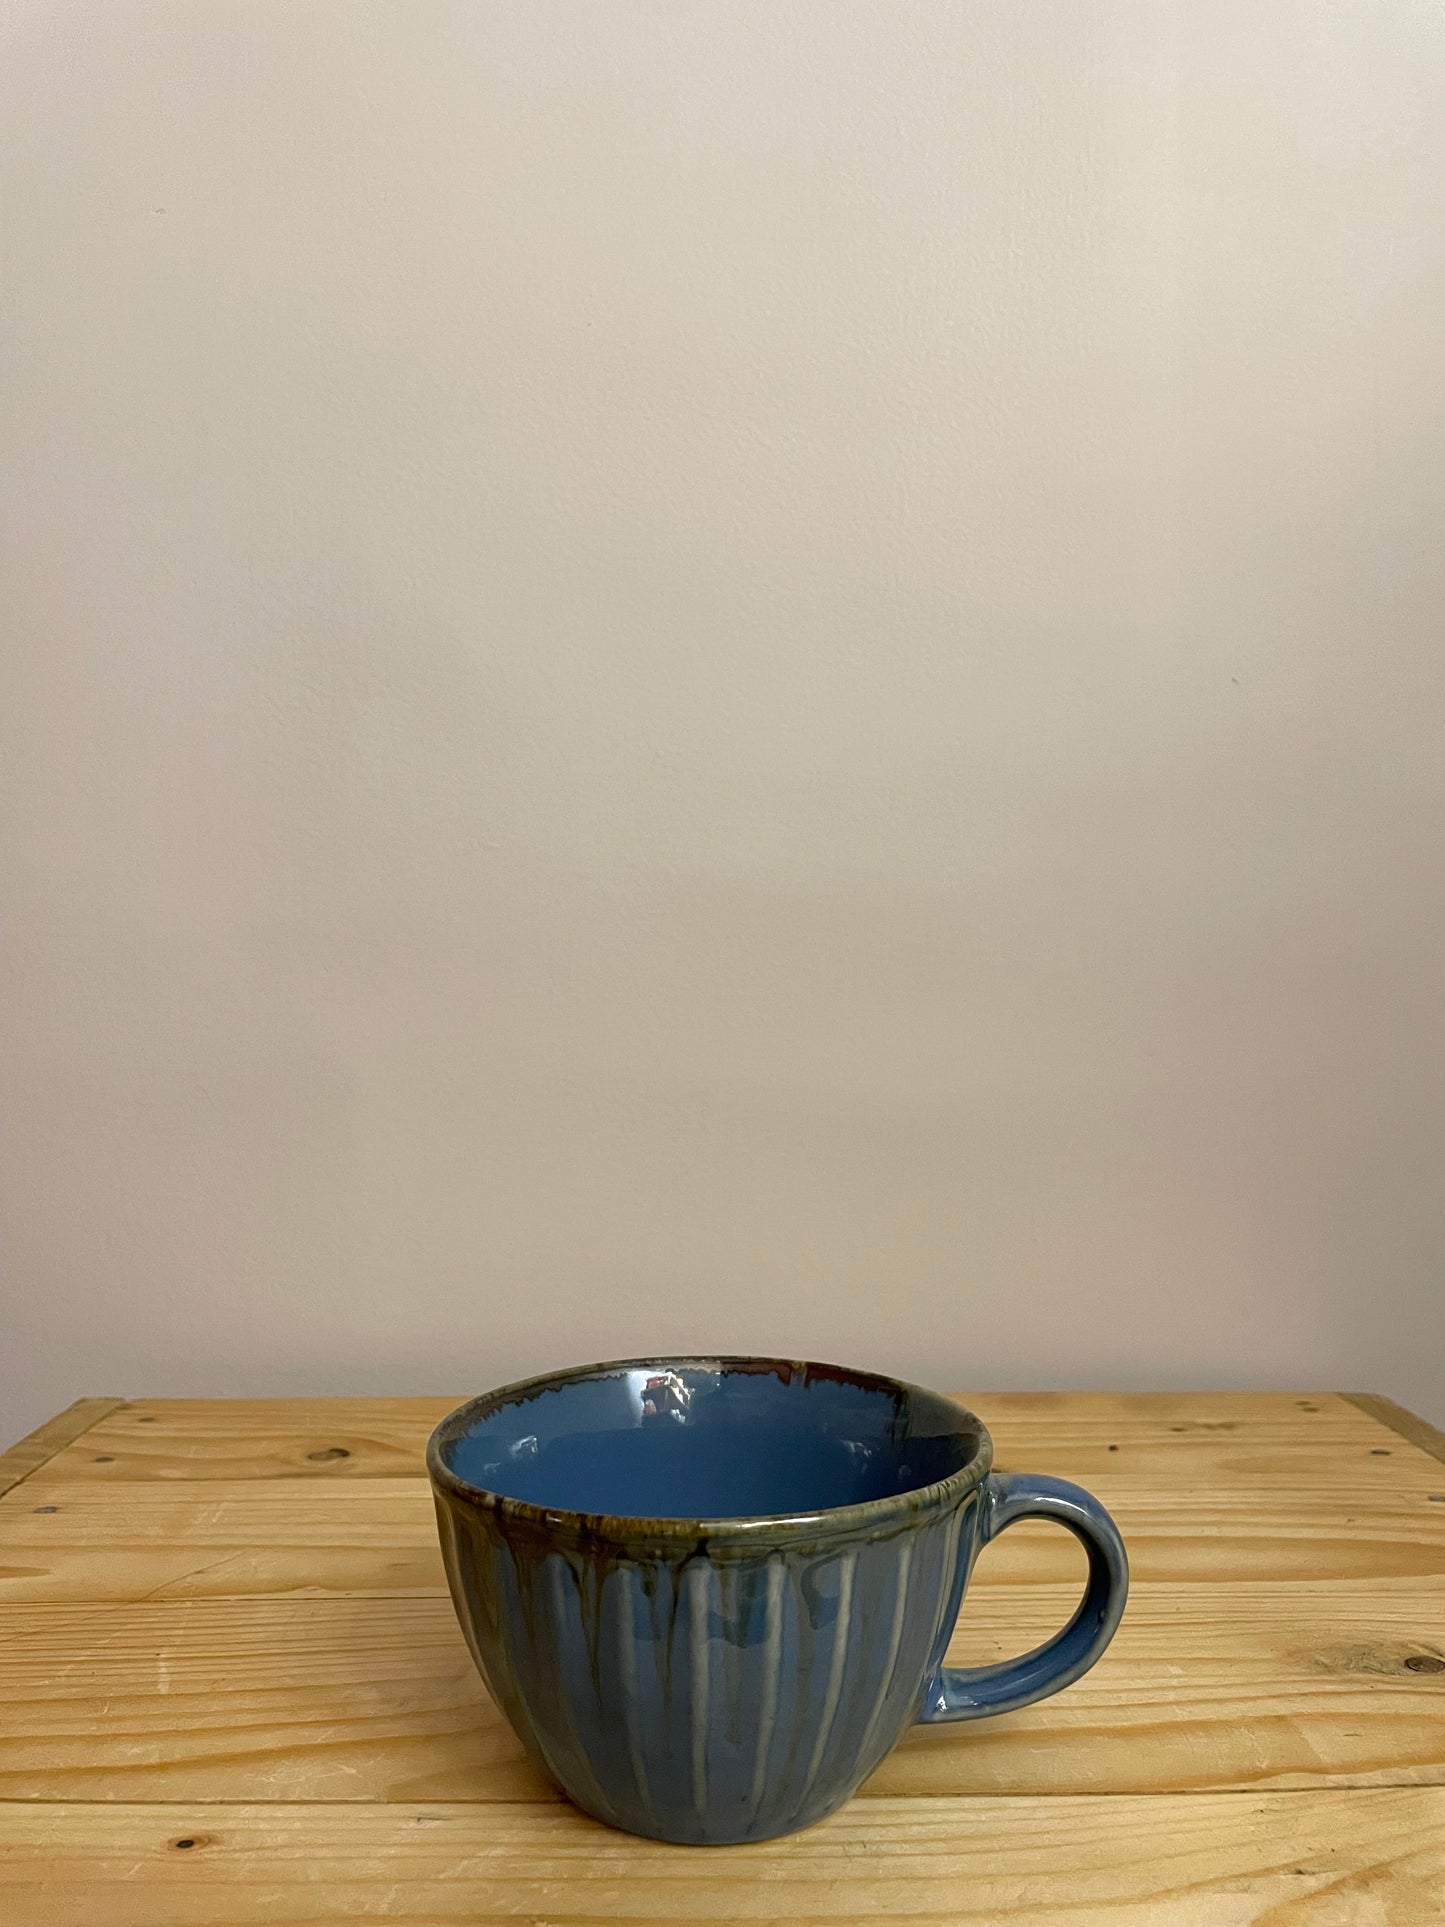 Keya Soup Bowls - Blue, Set of 2